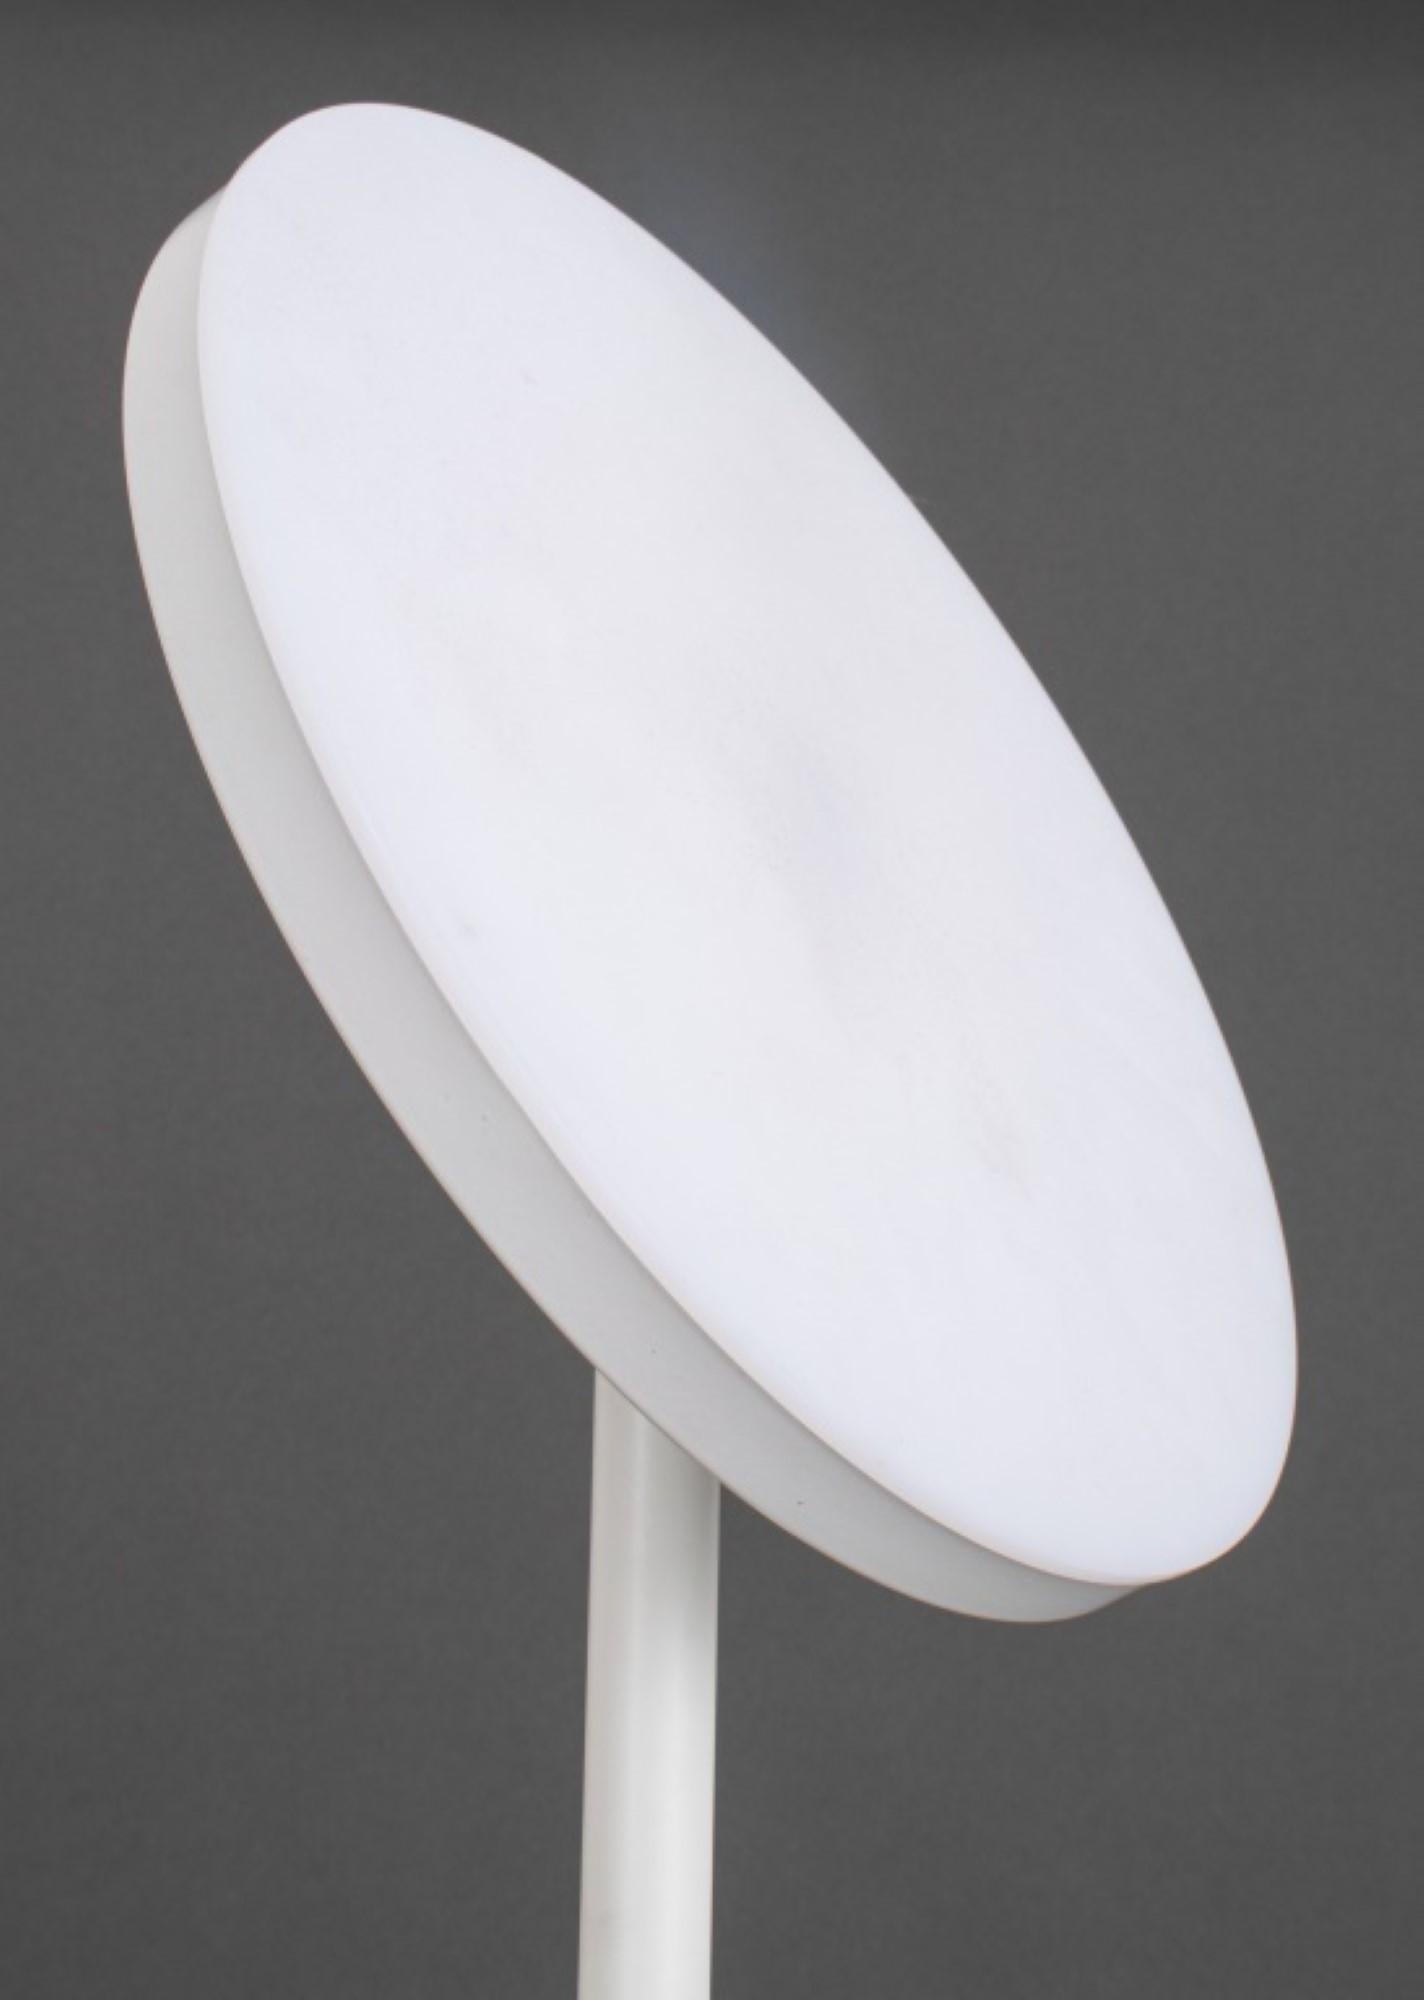 Le lampadaire sur pied LED post-moderne en blanc avec une lumière ronde réglable,

 a des dimensions de 69,25